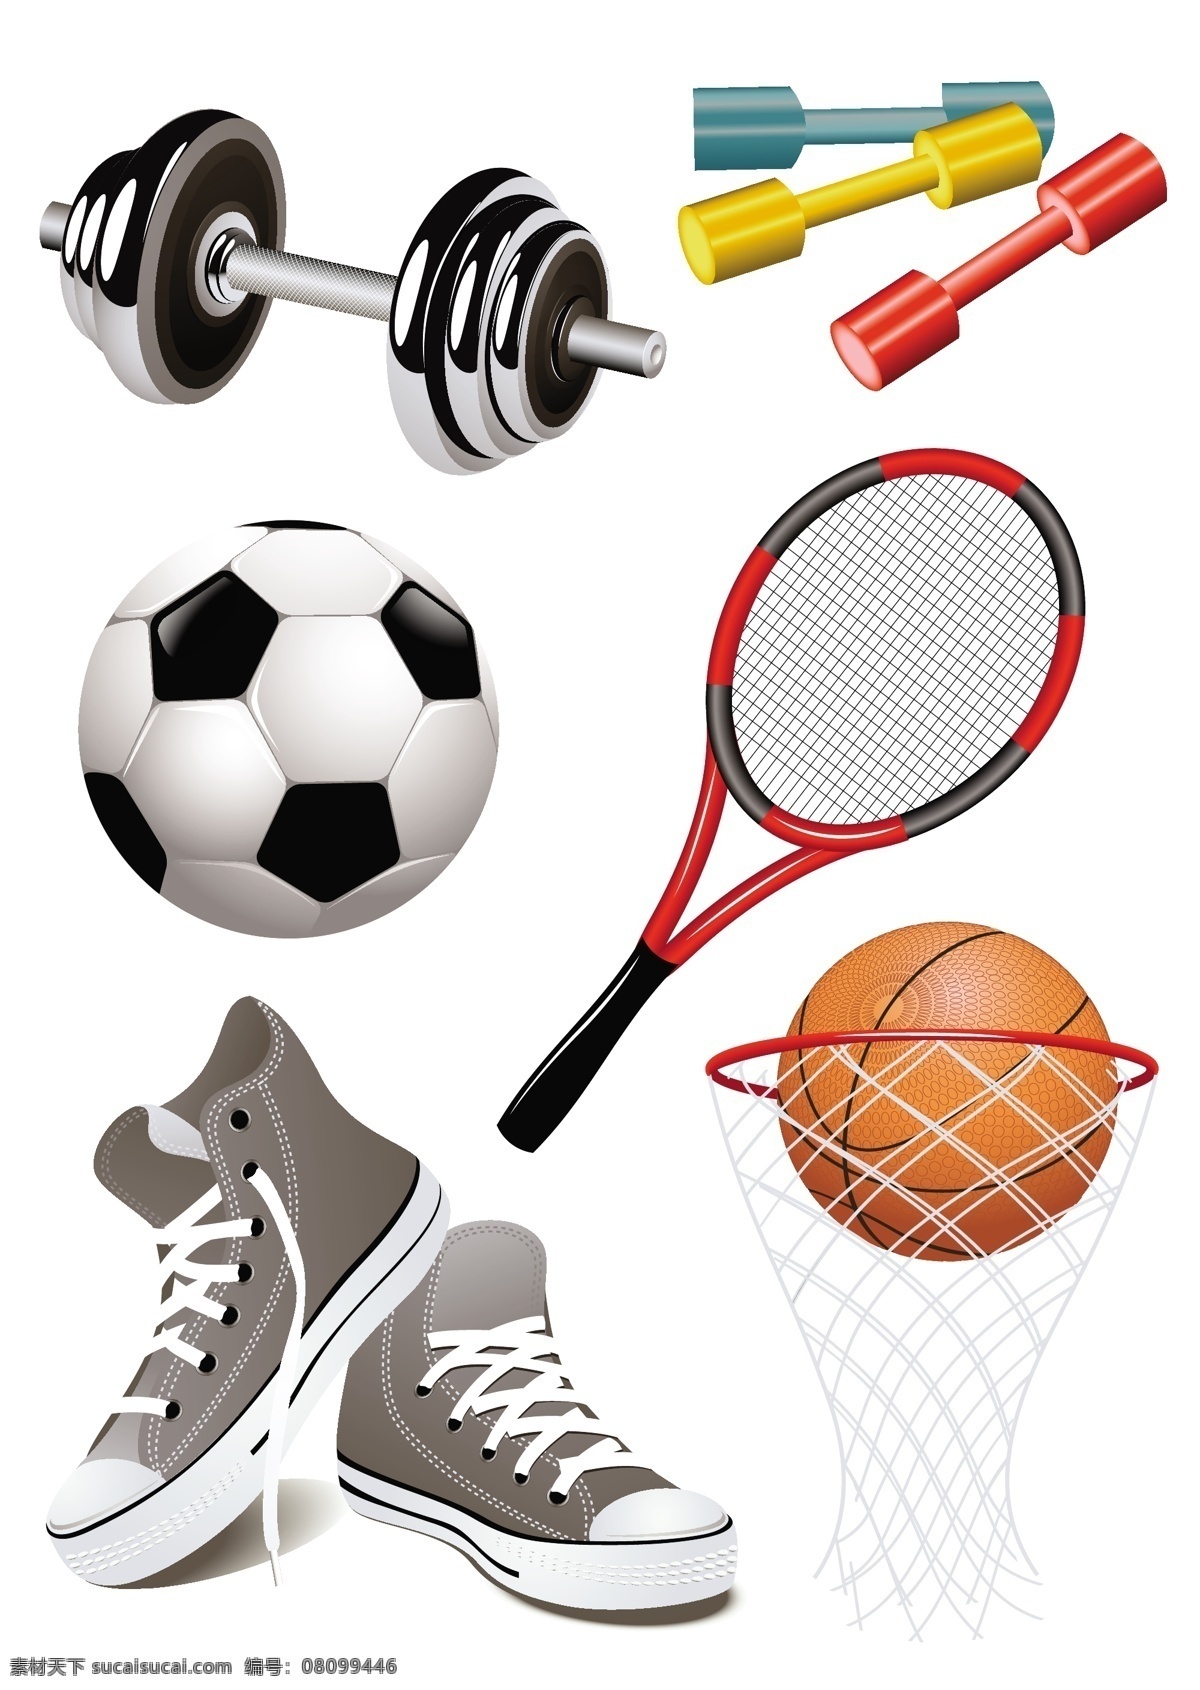 各种 运动用品 矢量 篮球 体育 运动矢量素材 运动鞋 足球 矢量运动用品 矢量运动器材 杠铃 哑铃 网球拍 矢量图 日常生活